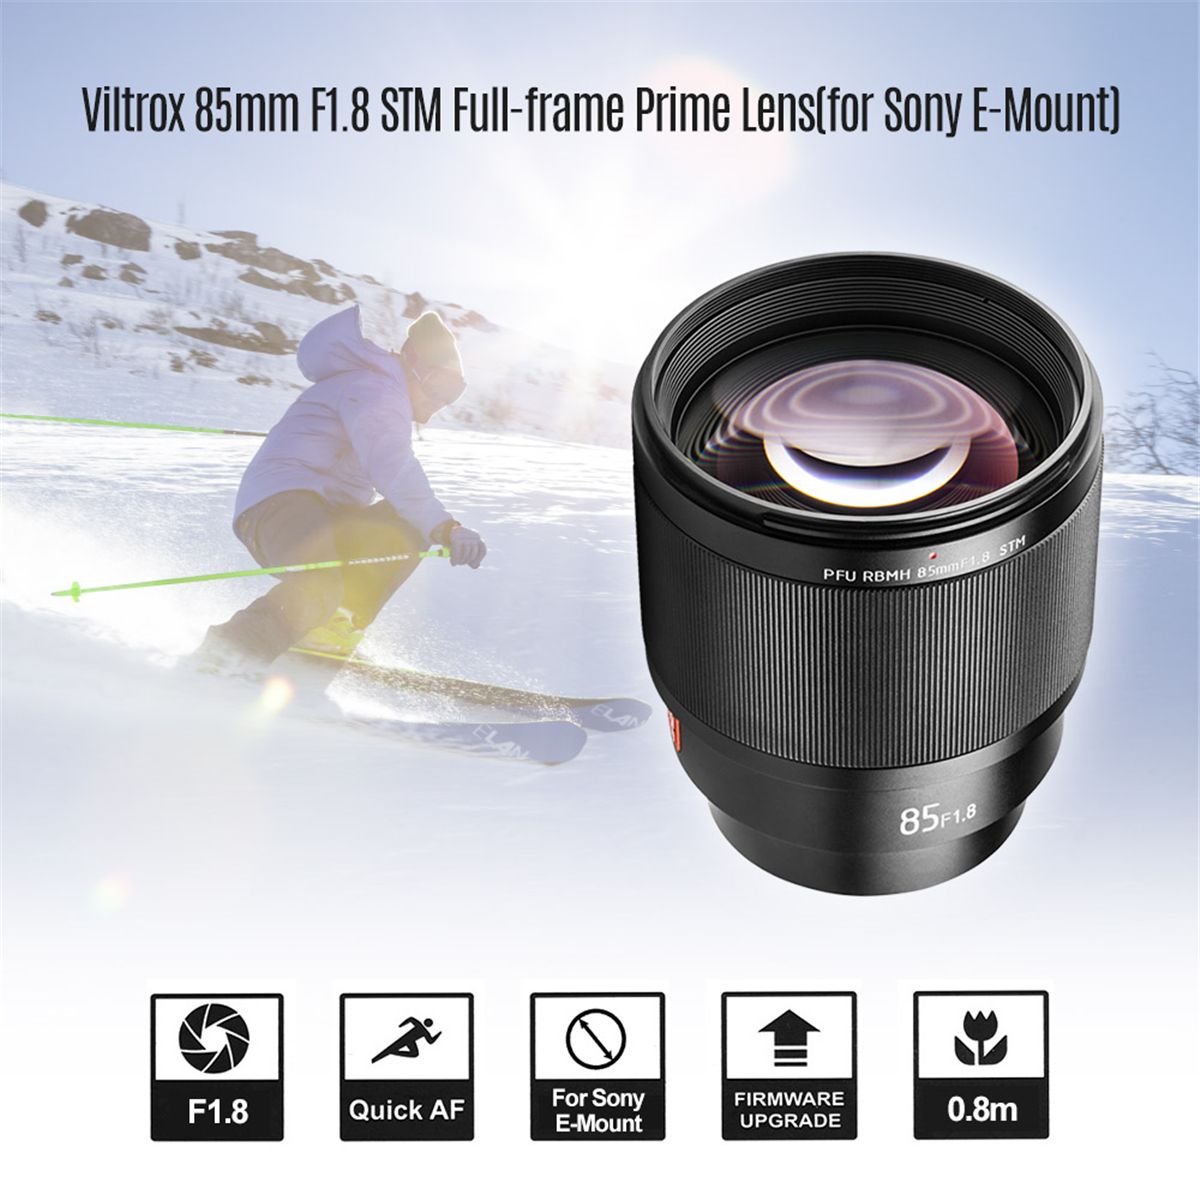 Viltrox-PFU-RBMH-85mm-F18-STM-Auto-Focus-Lens-for-Sony-E-Mount-Full-Frame-DSLR-Camera-1534969